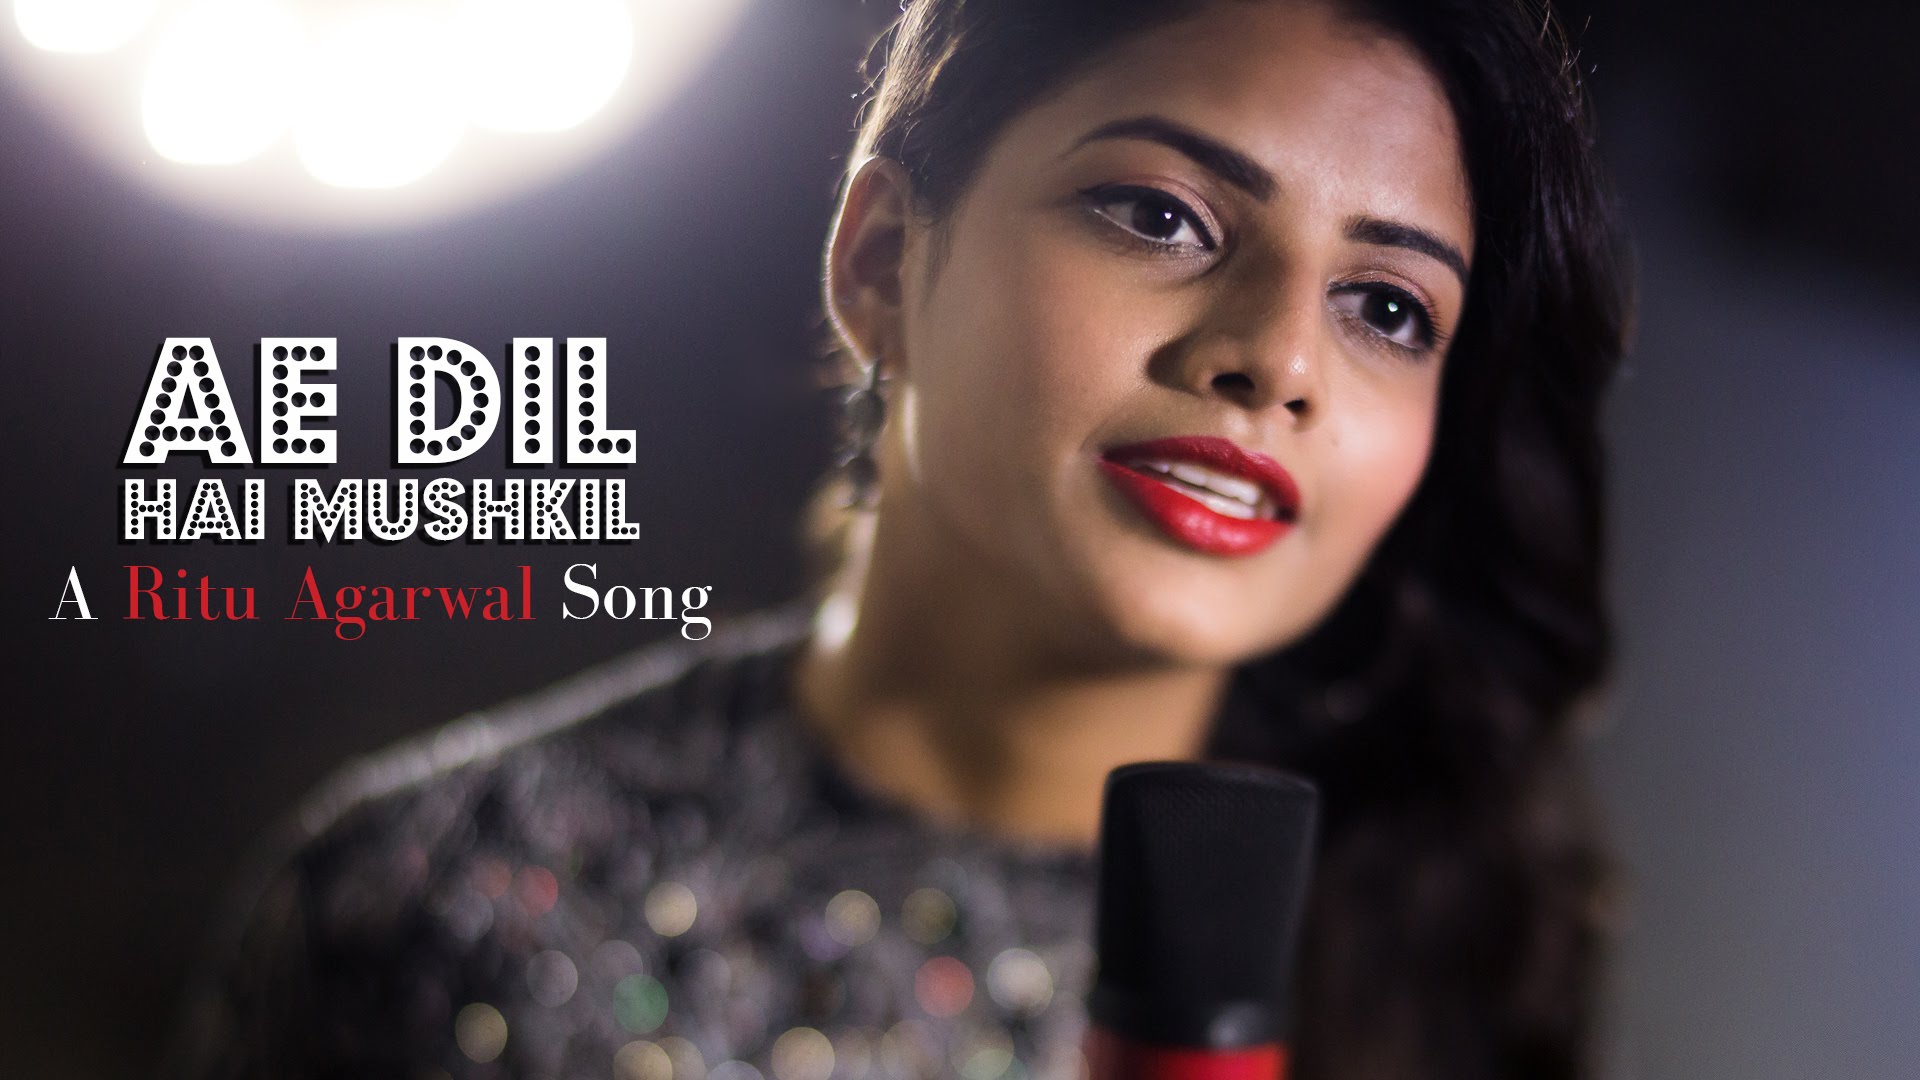 Ae Dil Hai Mushkil - Female Cover Version By @VoiceOfRitu | Karan Johar | Ranbir Kapoor